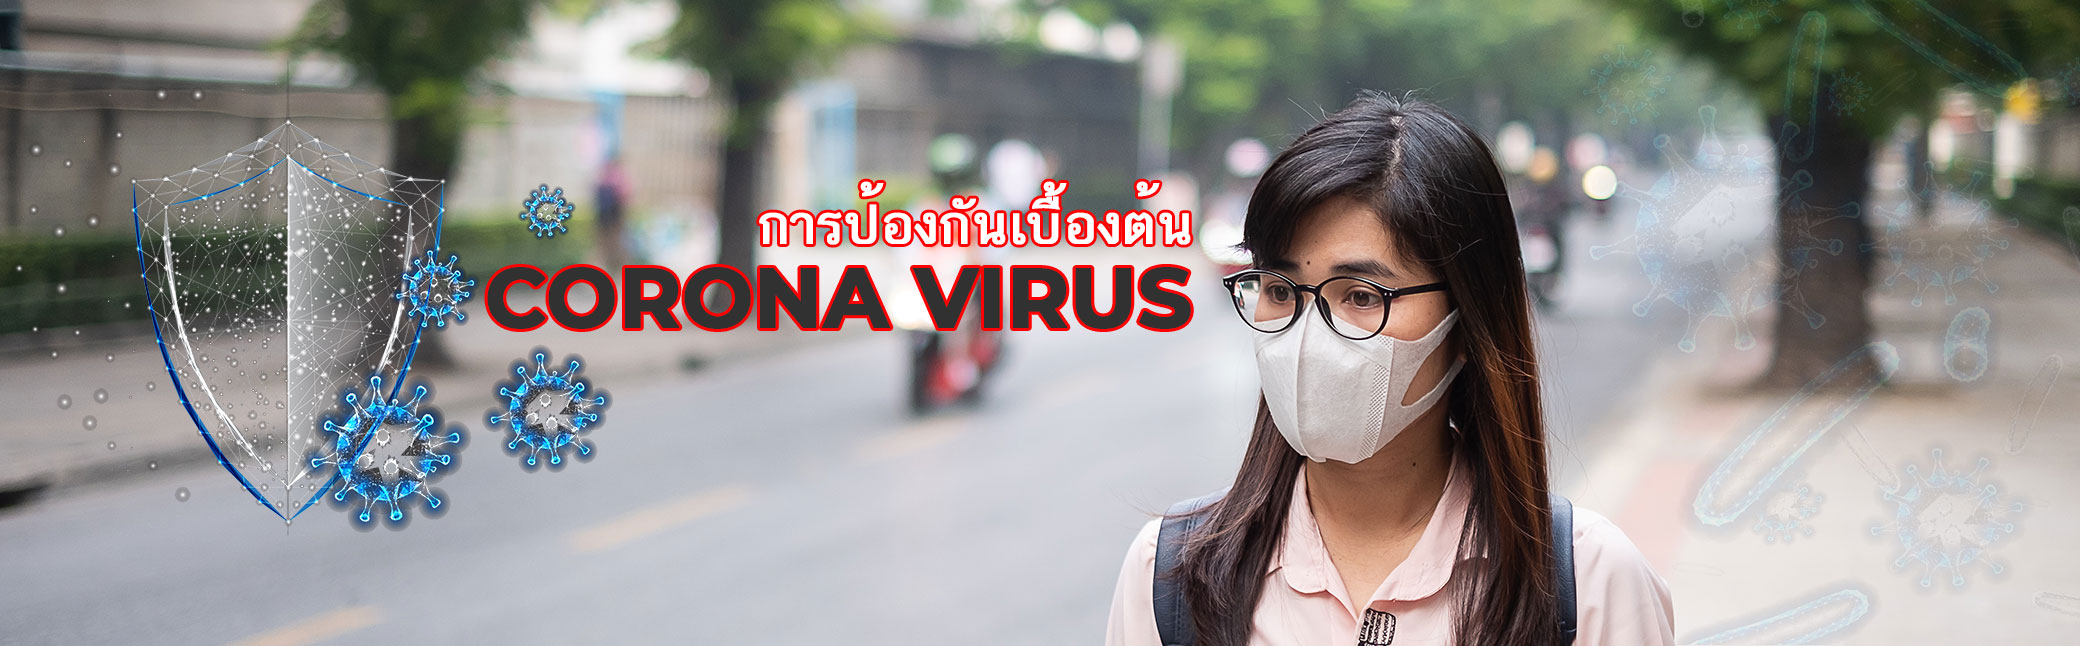 วิธีป้องกันไวรัสโคโรนาเบื้องต้น ไวรัสสายพันธุ์ใหม่ 2019 แพร่กระจายจากเมืองอู่ฮั้นประเทศจีน